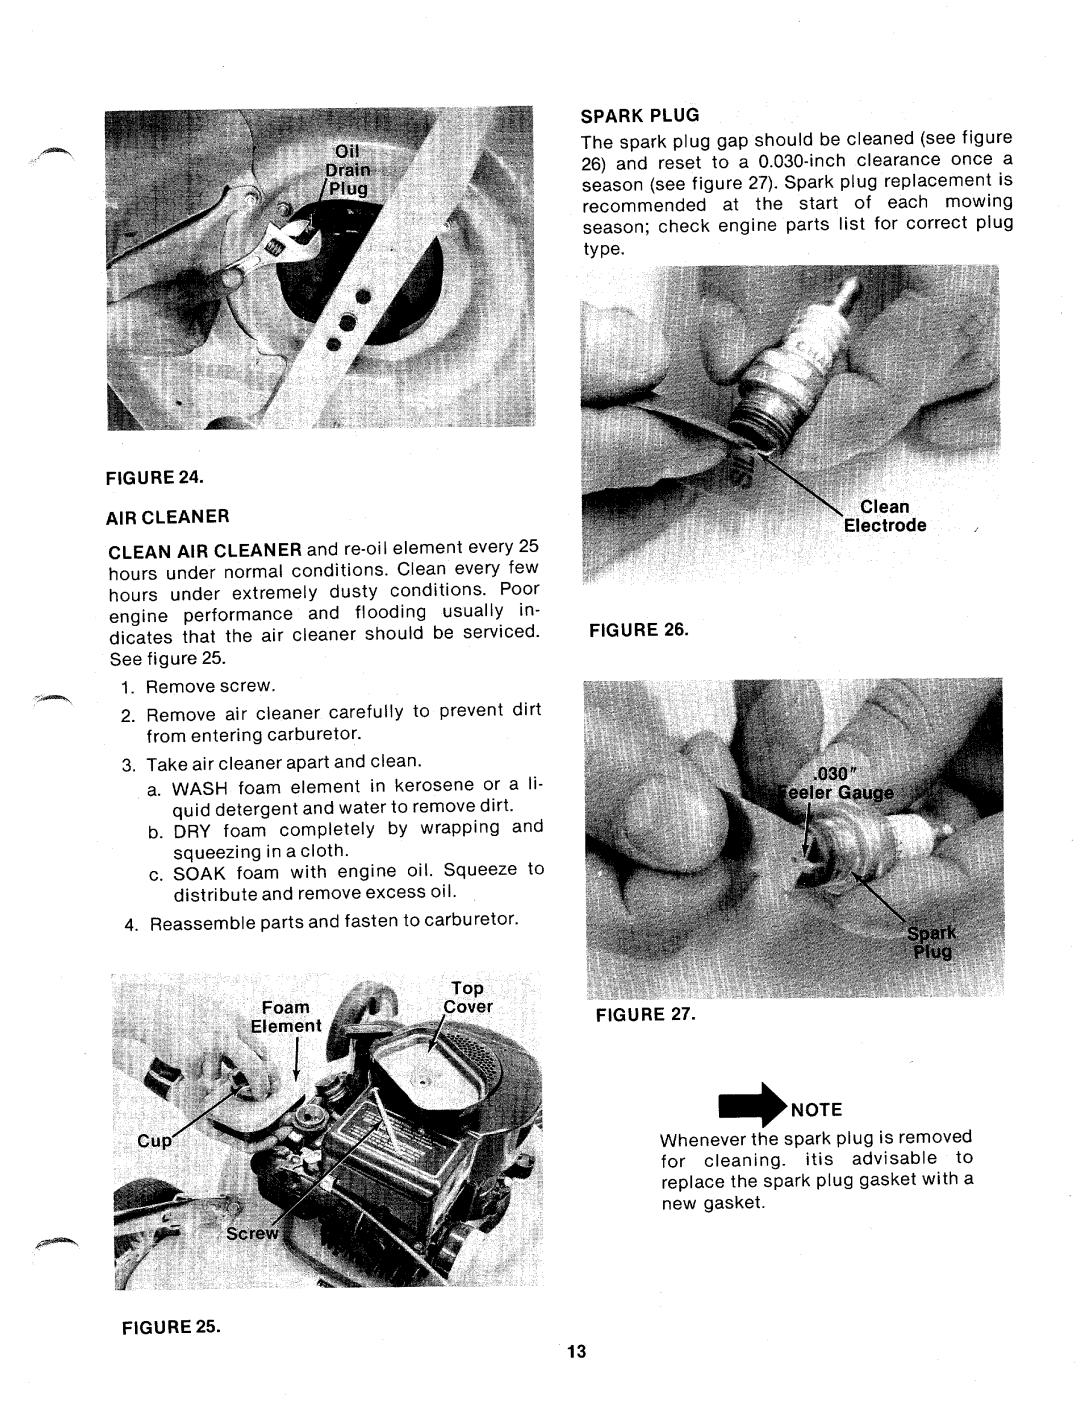 Bolens 101-340A manual 